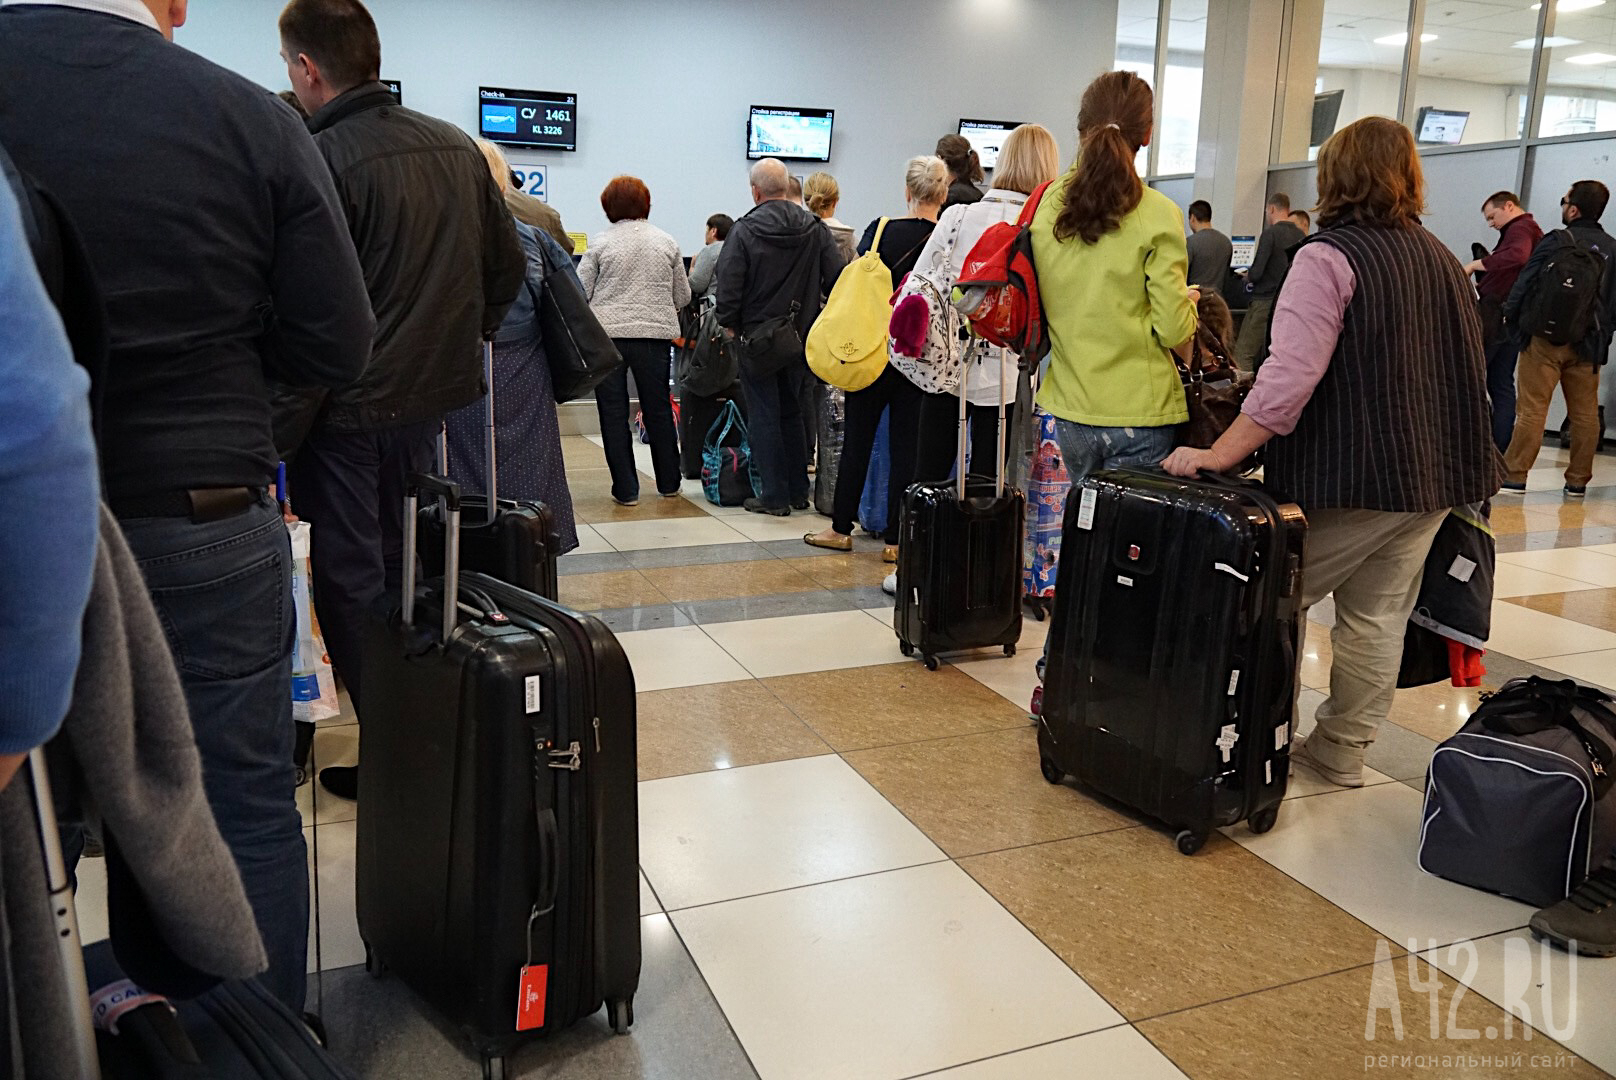 В аэропорту Шереметьево пассажир опоздал на регистрацию и разбил стекло представительства авиакомпании